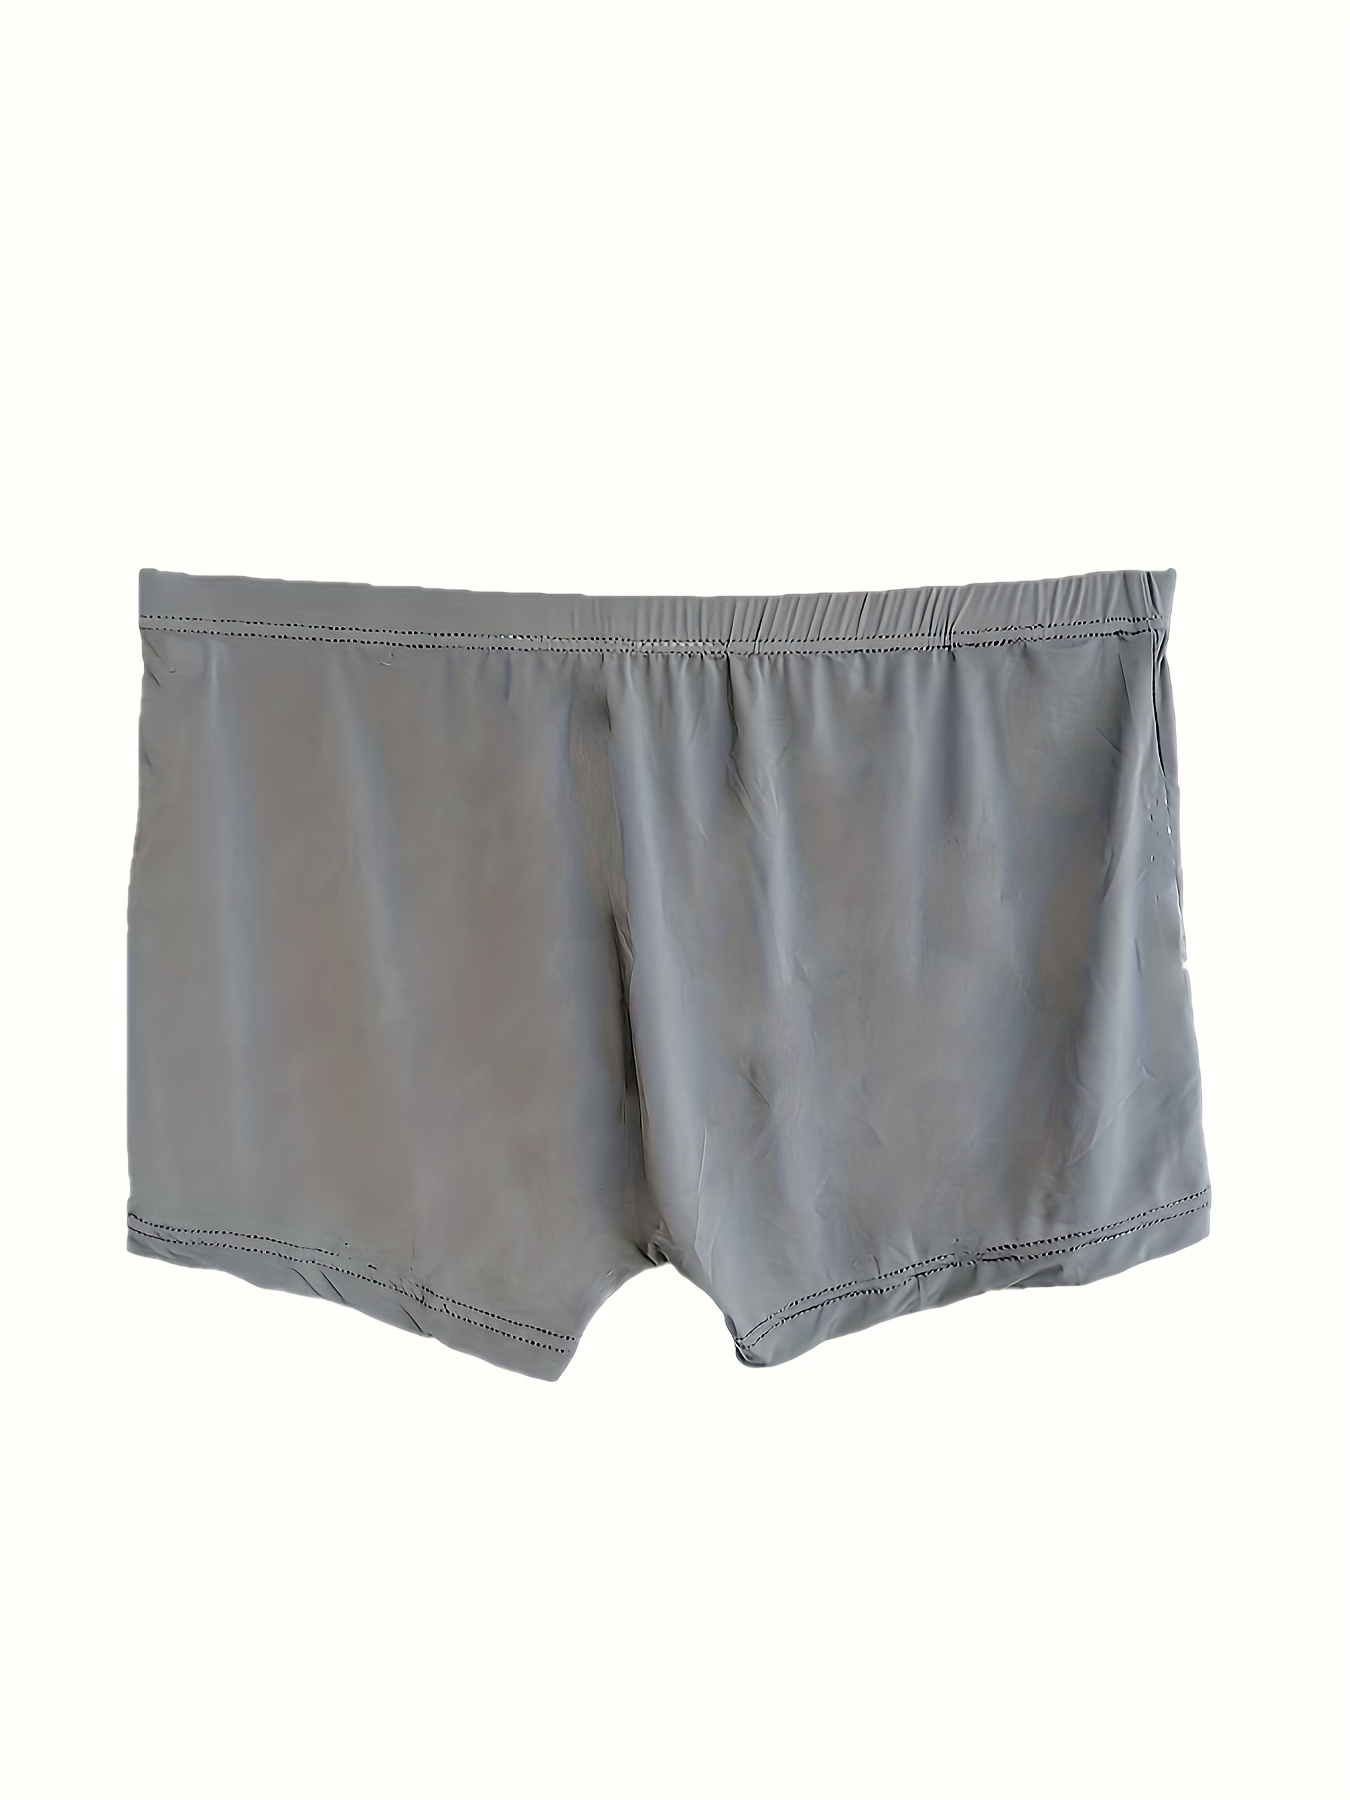 Summer Style Translucent Ice Silk Mens Underwear /Bag, Thin